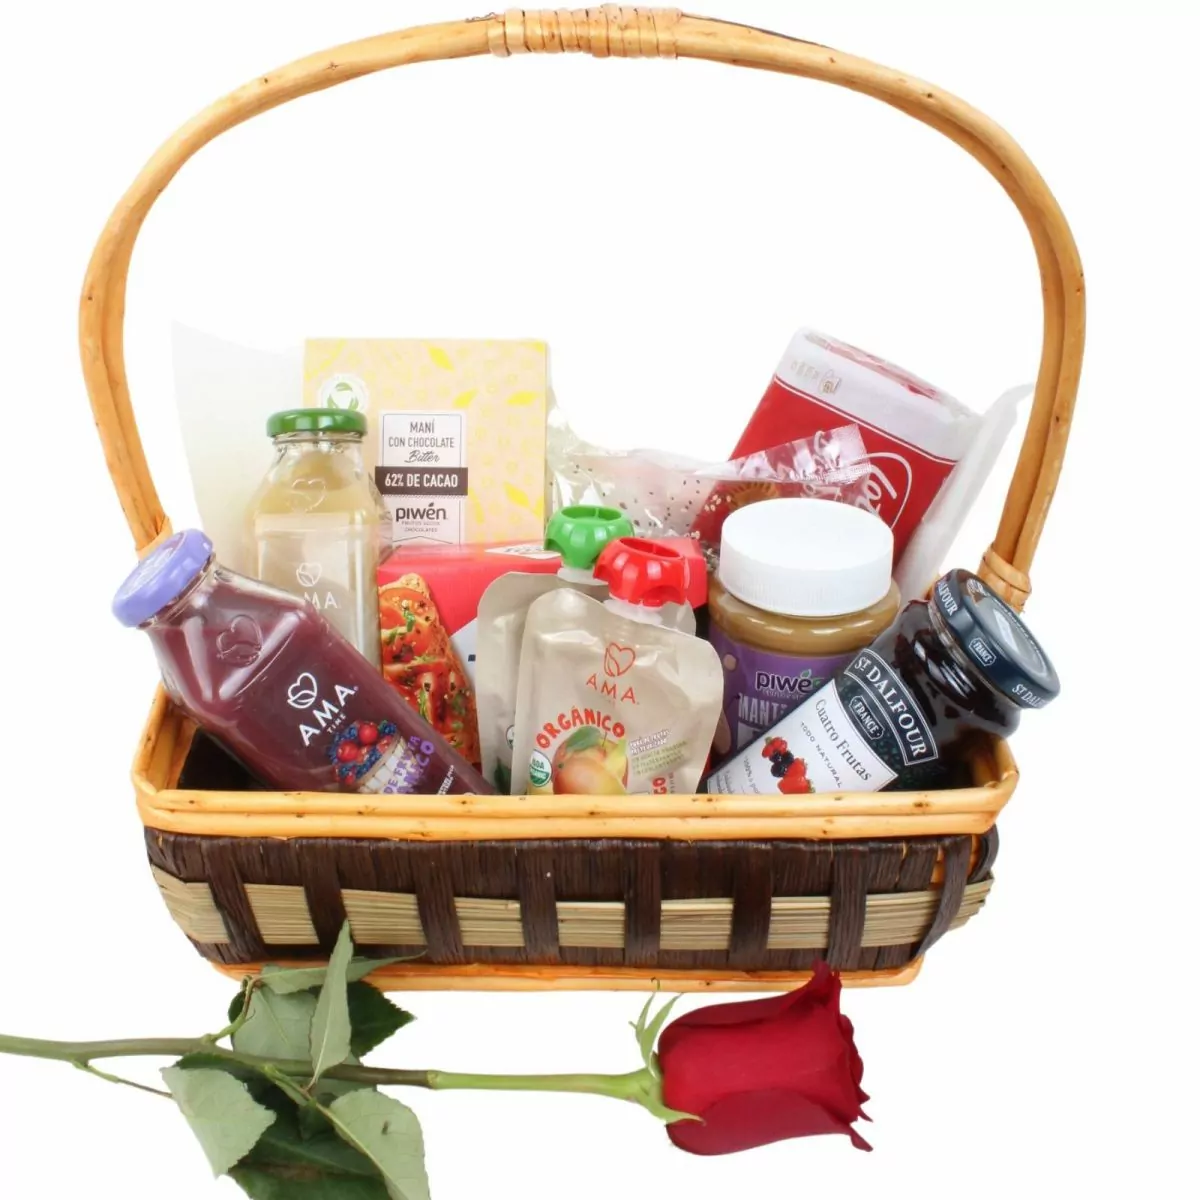 Foto principal Set de regalo Picnic para dos - Canasto de picnic con jugo orgánico, compota de fruta, mantequilla de maní y mermelada, tostadas, galletas y frutos secos